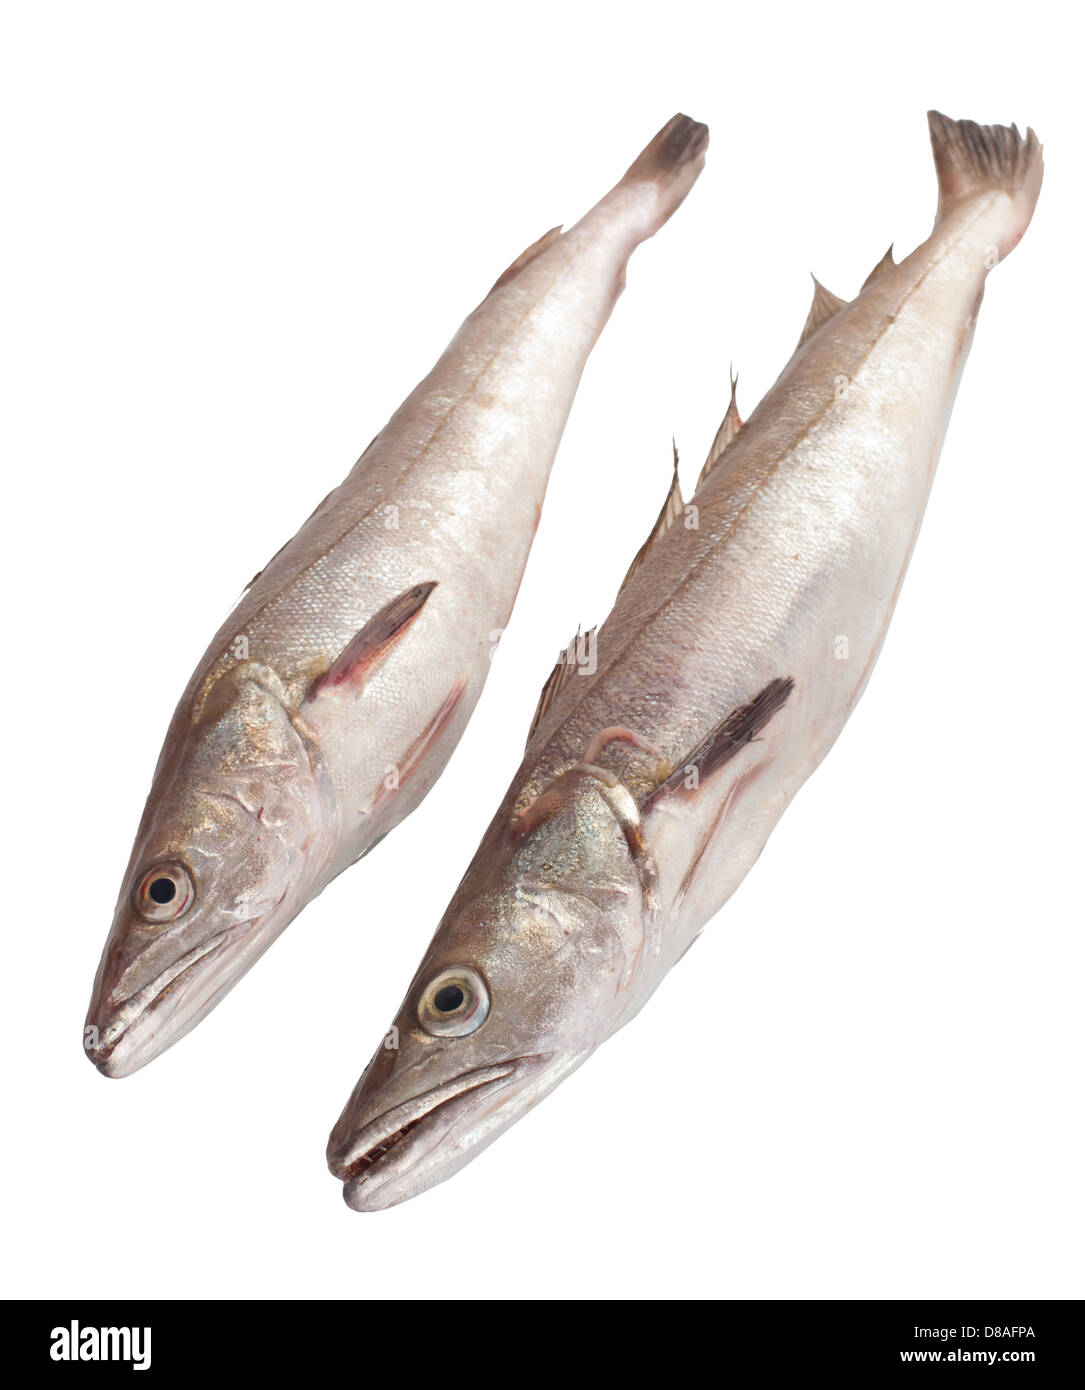 Two codfish on white background Stock Photo